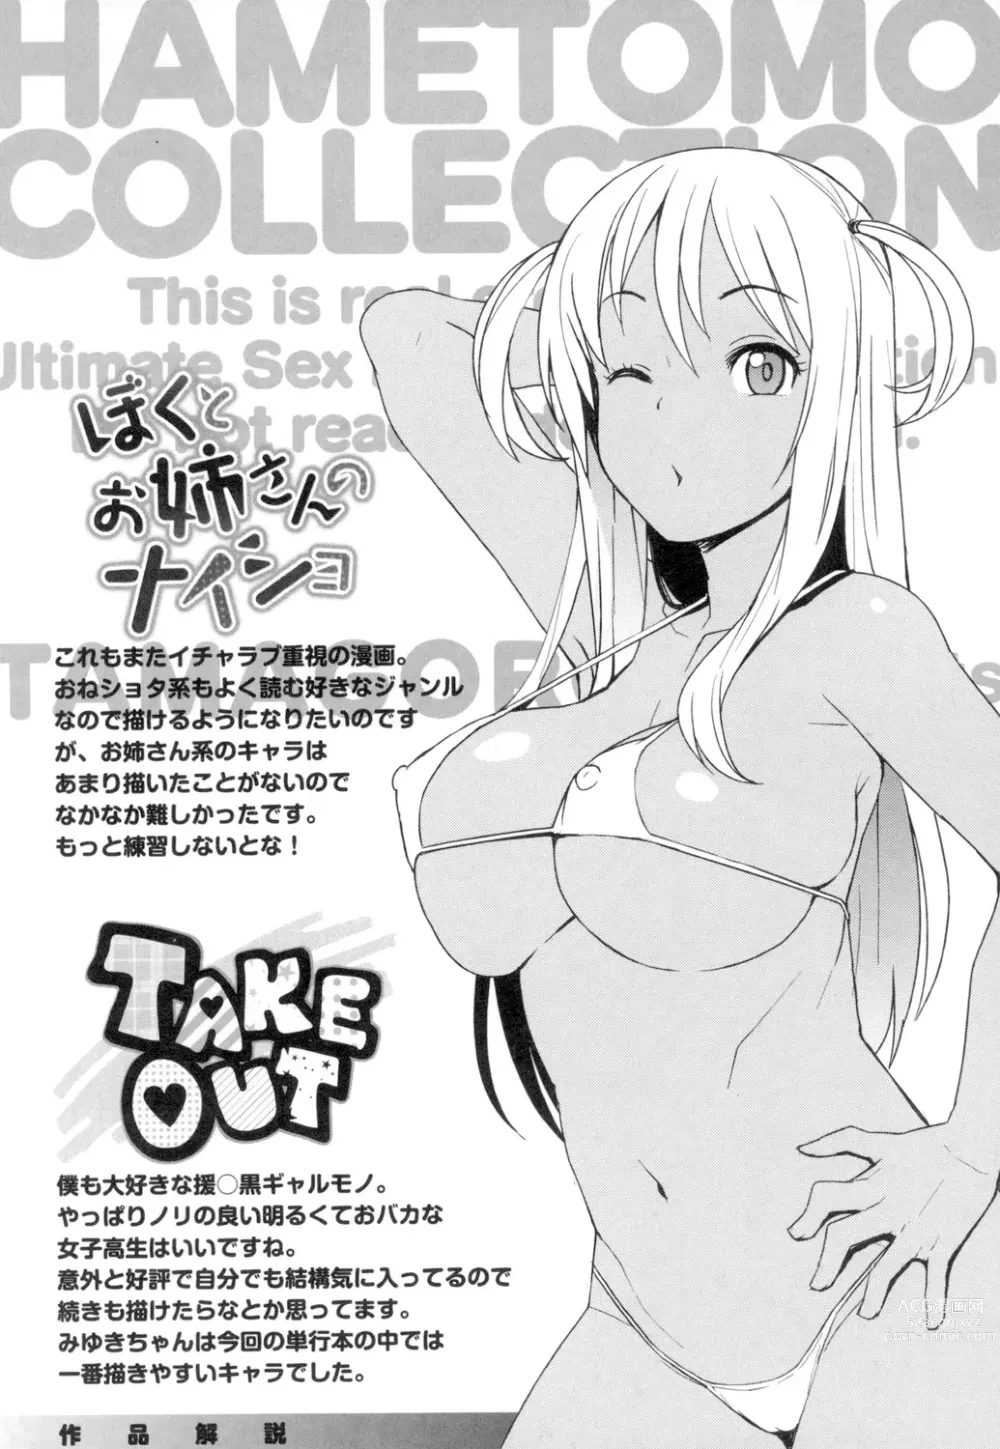 Page 199 of manga Hametomo Collection